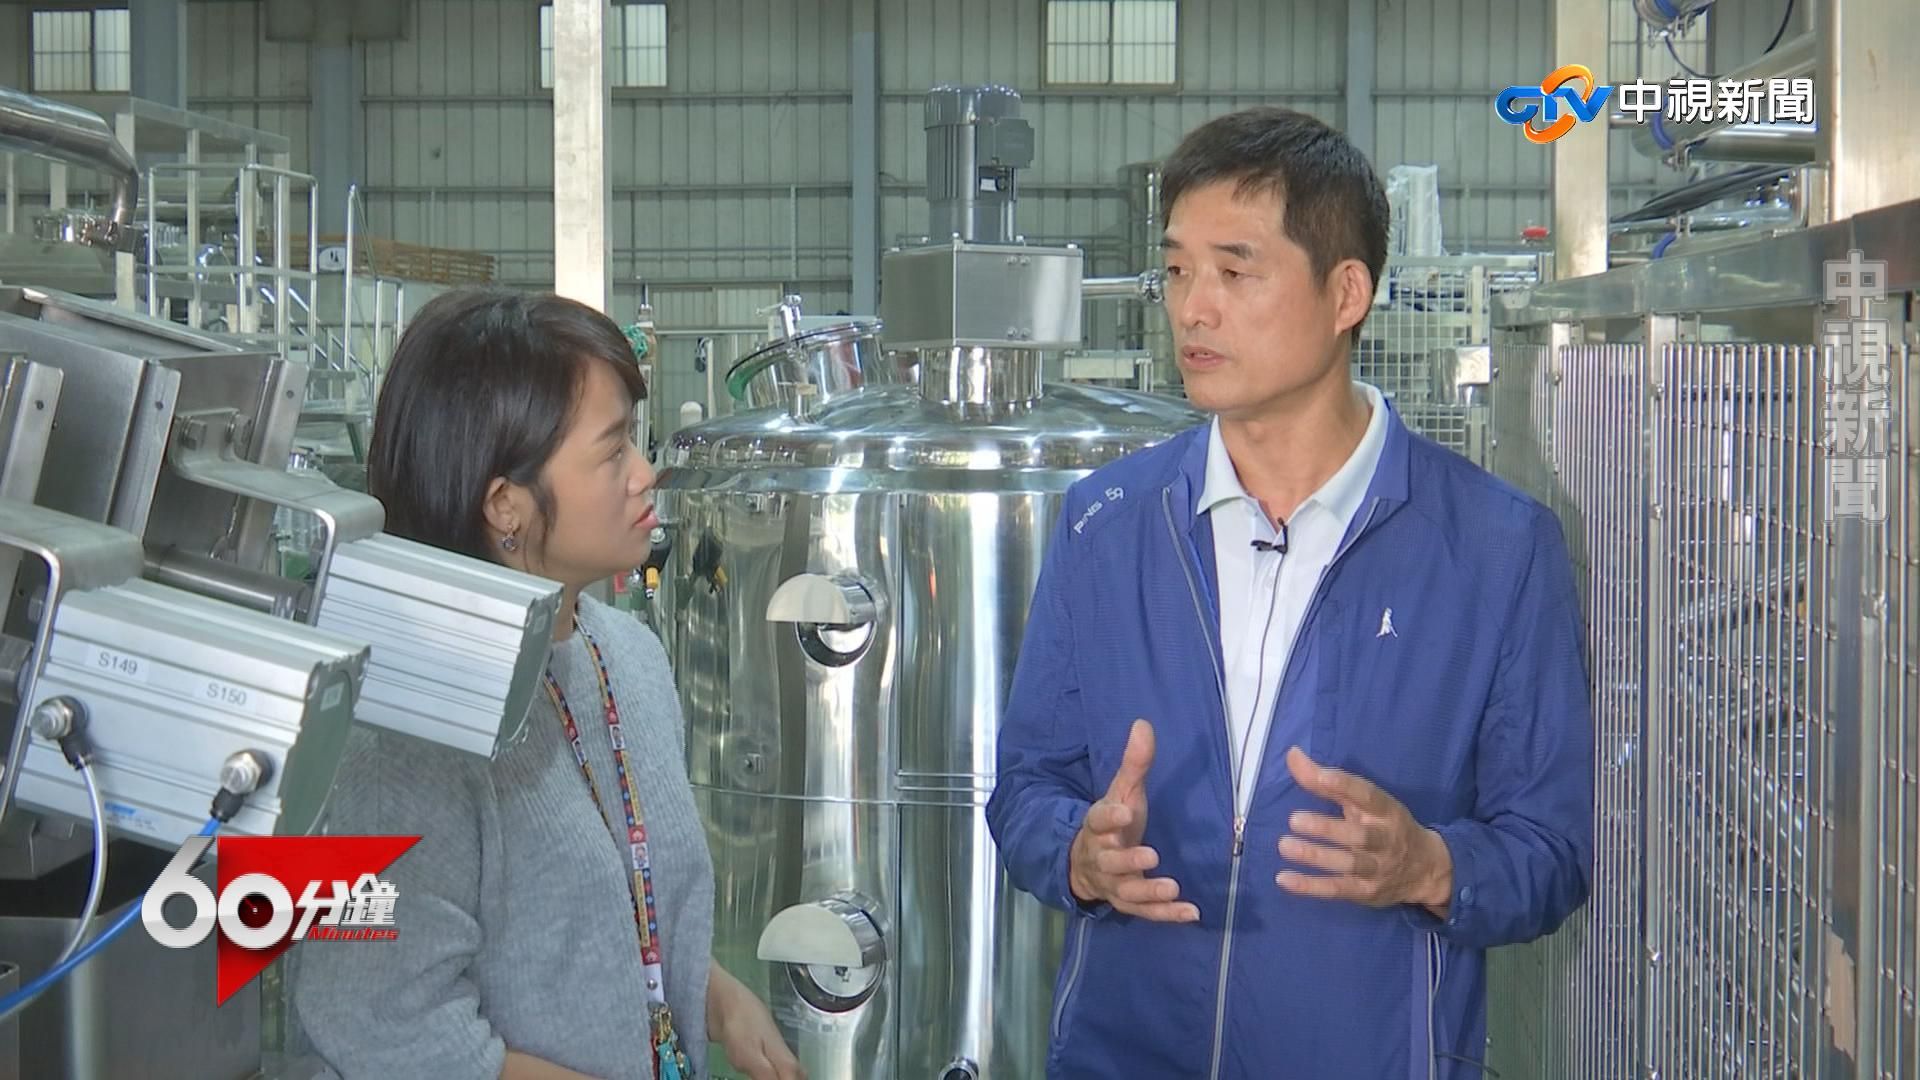 Brian Cheng, vnos beljakovin, rastlinske beljakovine, sojini izoflavoni, nadomestki mesa, vegetarijansko meso, stroj za izdelavo sojinega mleka in tofuja, stroj za izdelavo zelenjavnega tofuja